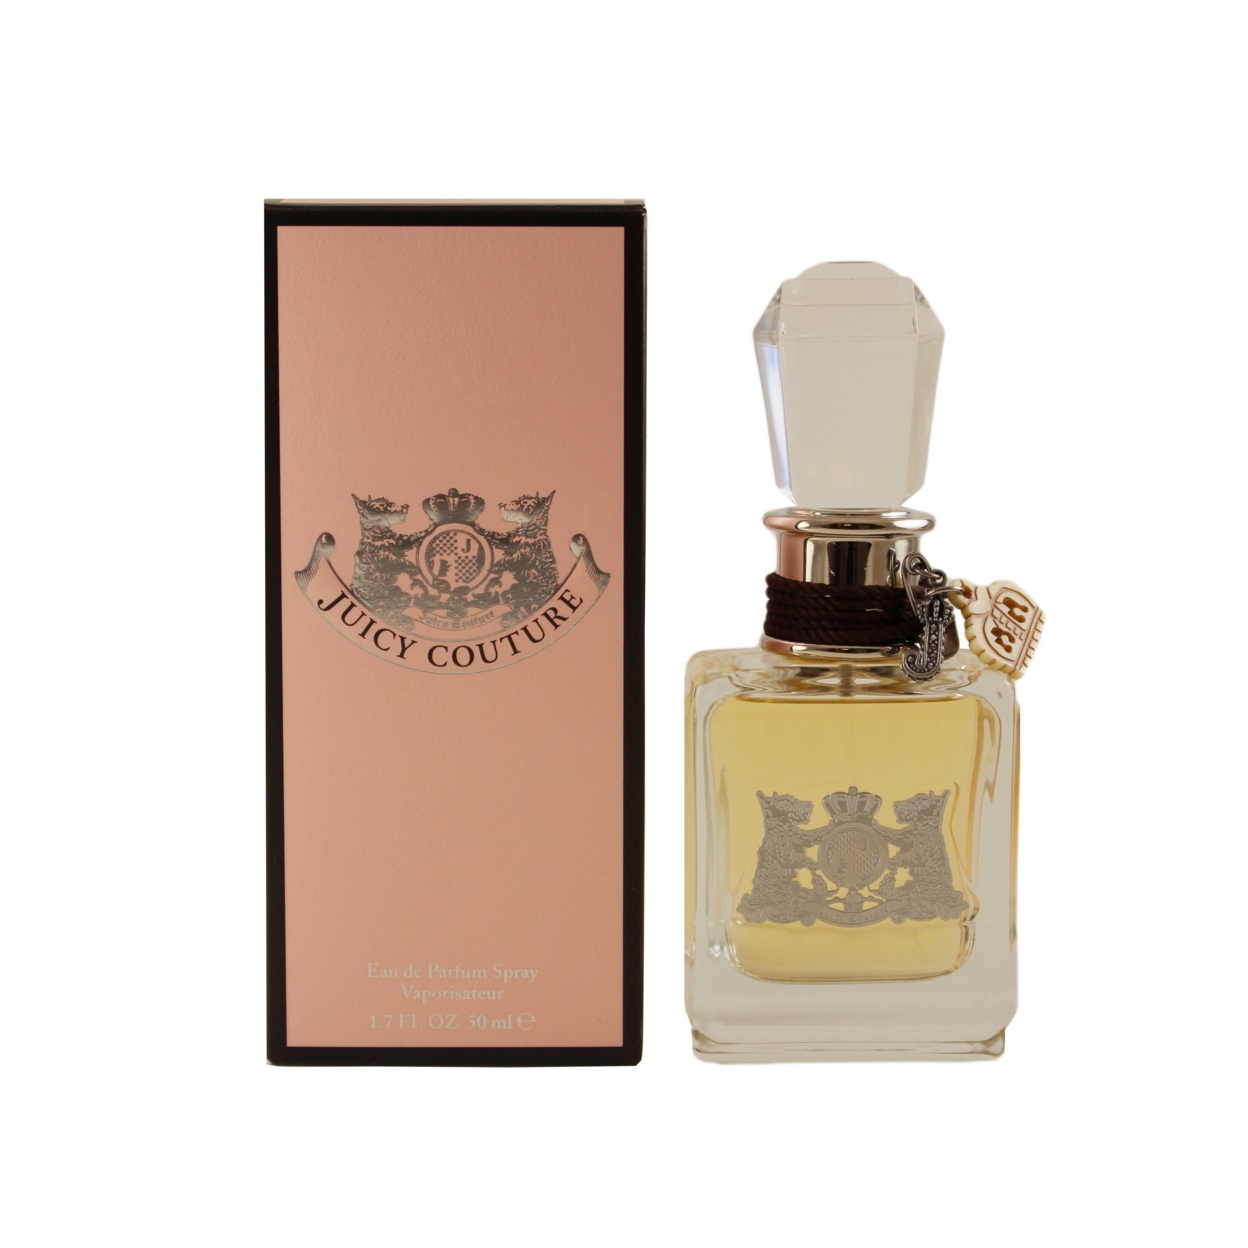 Juicy Couture Perfume By Juicy Couture For Women Eau De Parfum Spray 1.7 Oz / 50 Ml